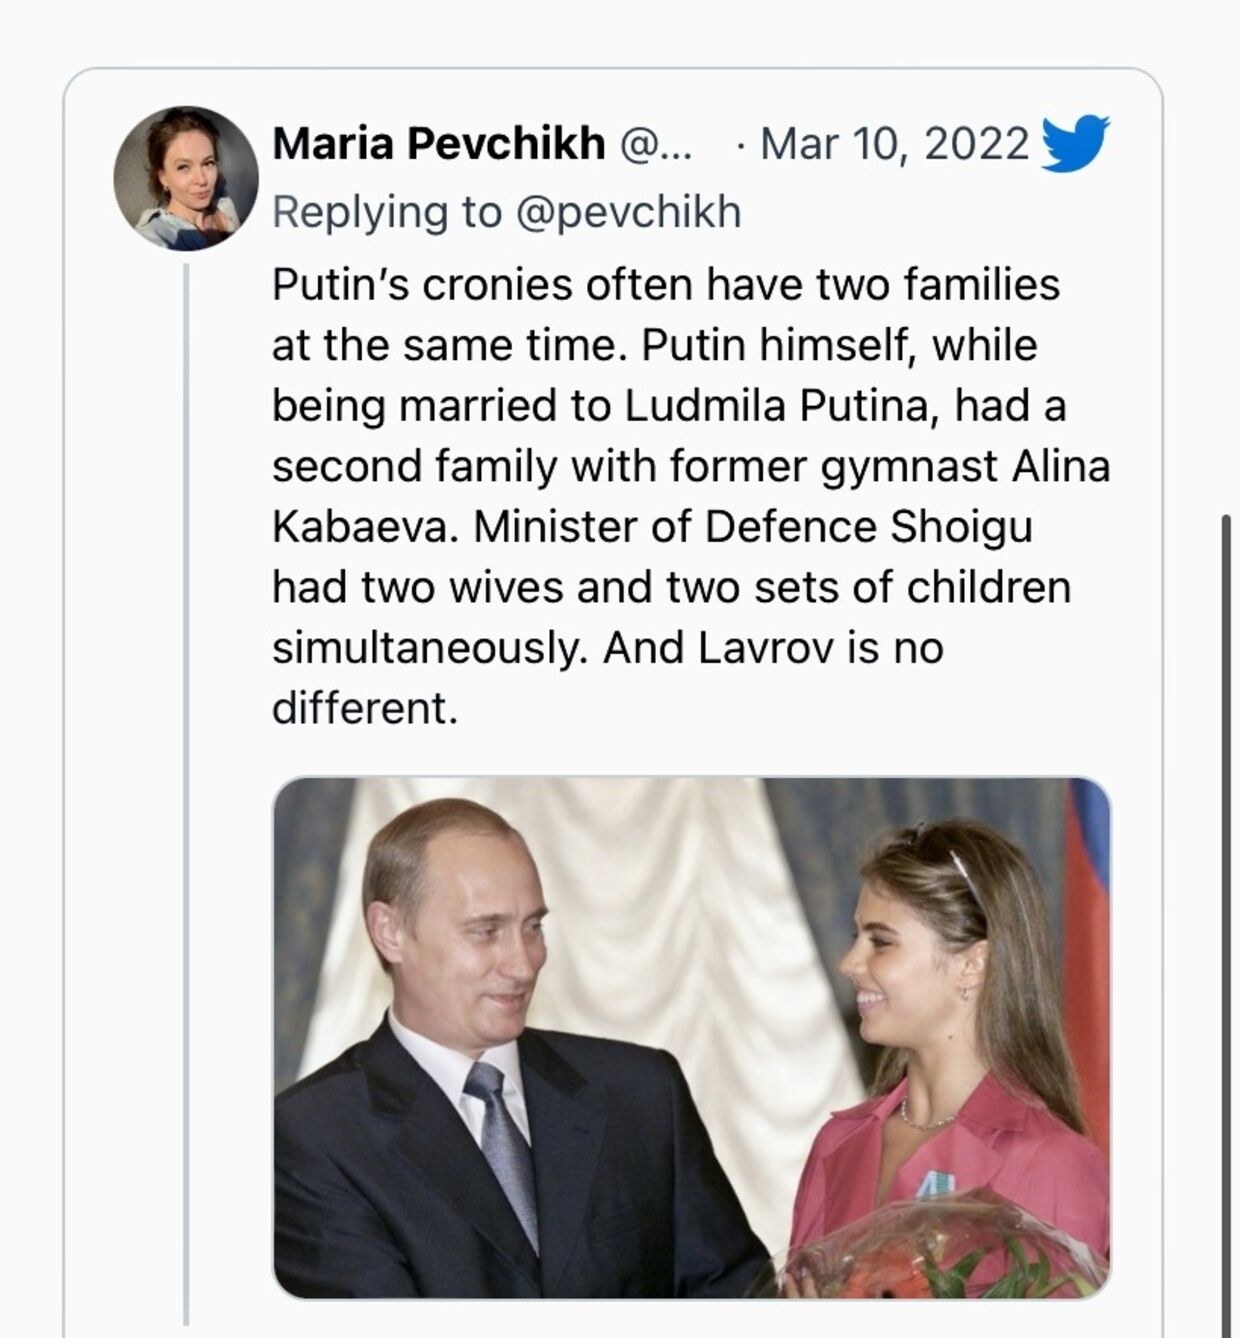 Både Putin. Lavrov og Shoigu lever ifølge de russiske antikorruptionsfolk et dobbeltliv.